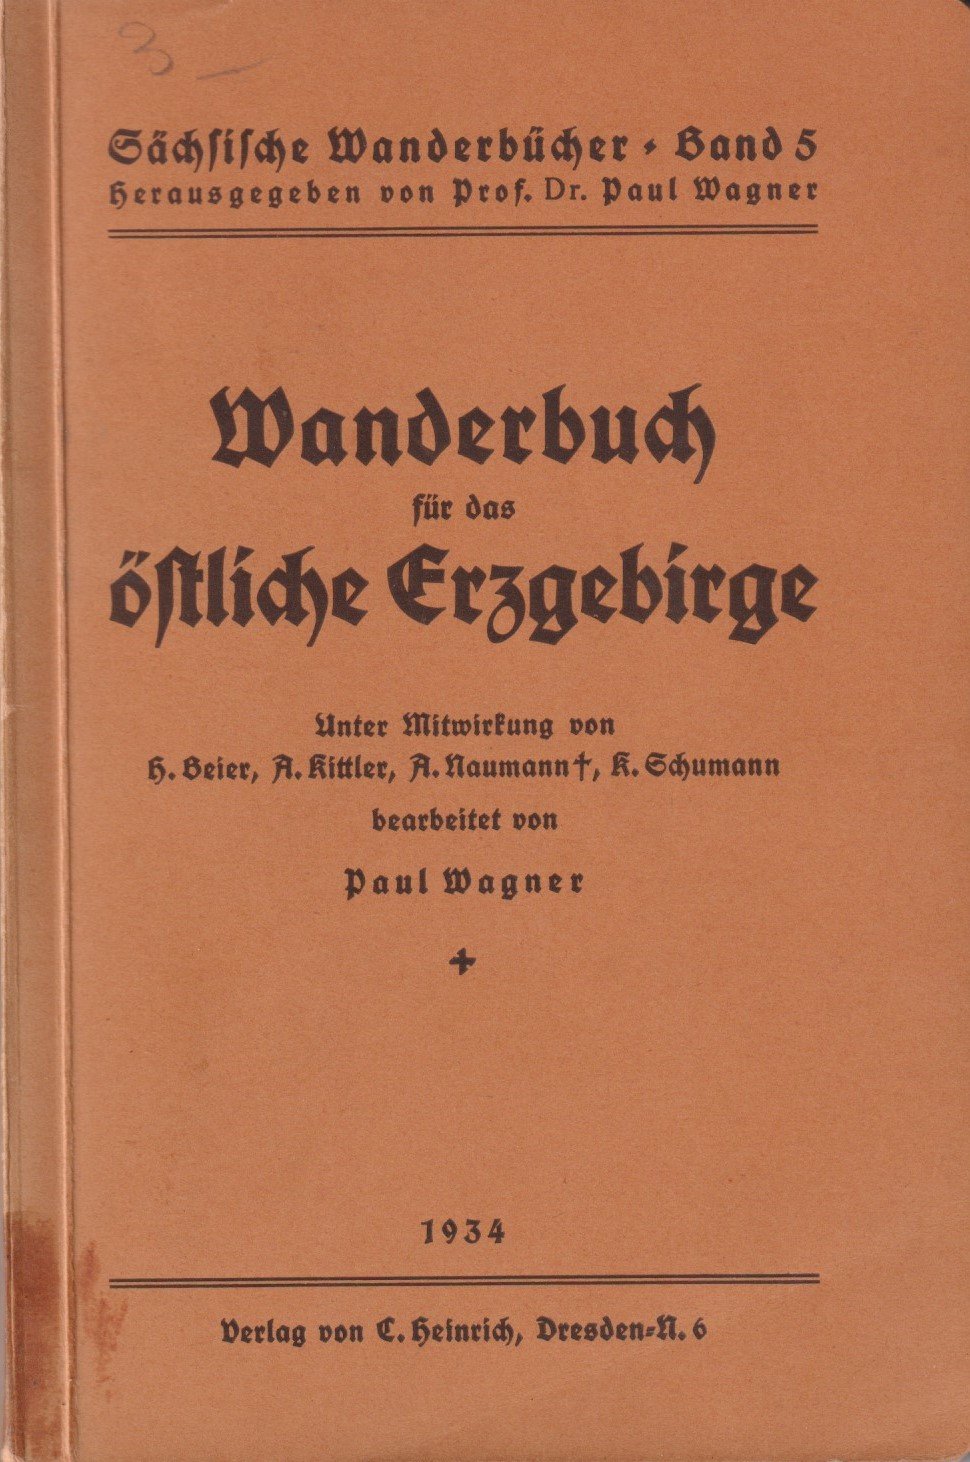 Sächsische Wanderbücher, Band 5: Wanderbuch für das östliche Erzgebirge. (Archiv SAXONIA-FREIBERG-STIFTUNG CC BY-NC-SA)